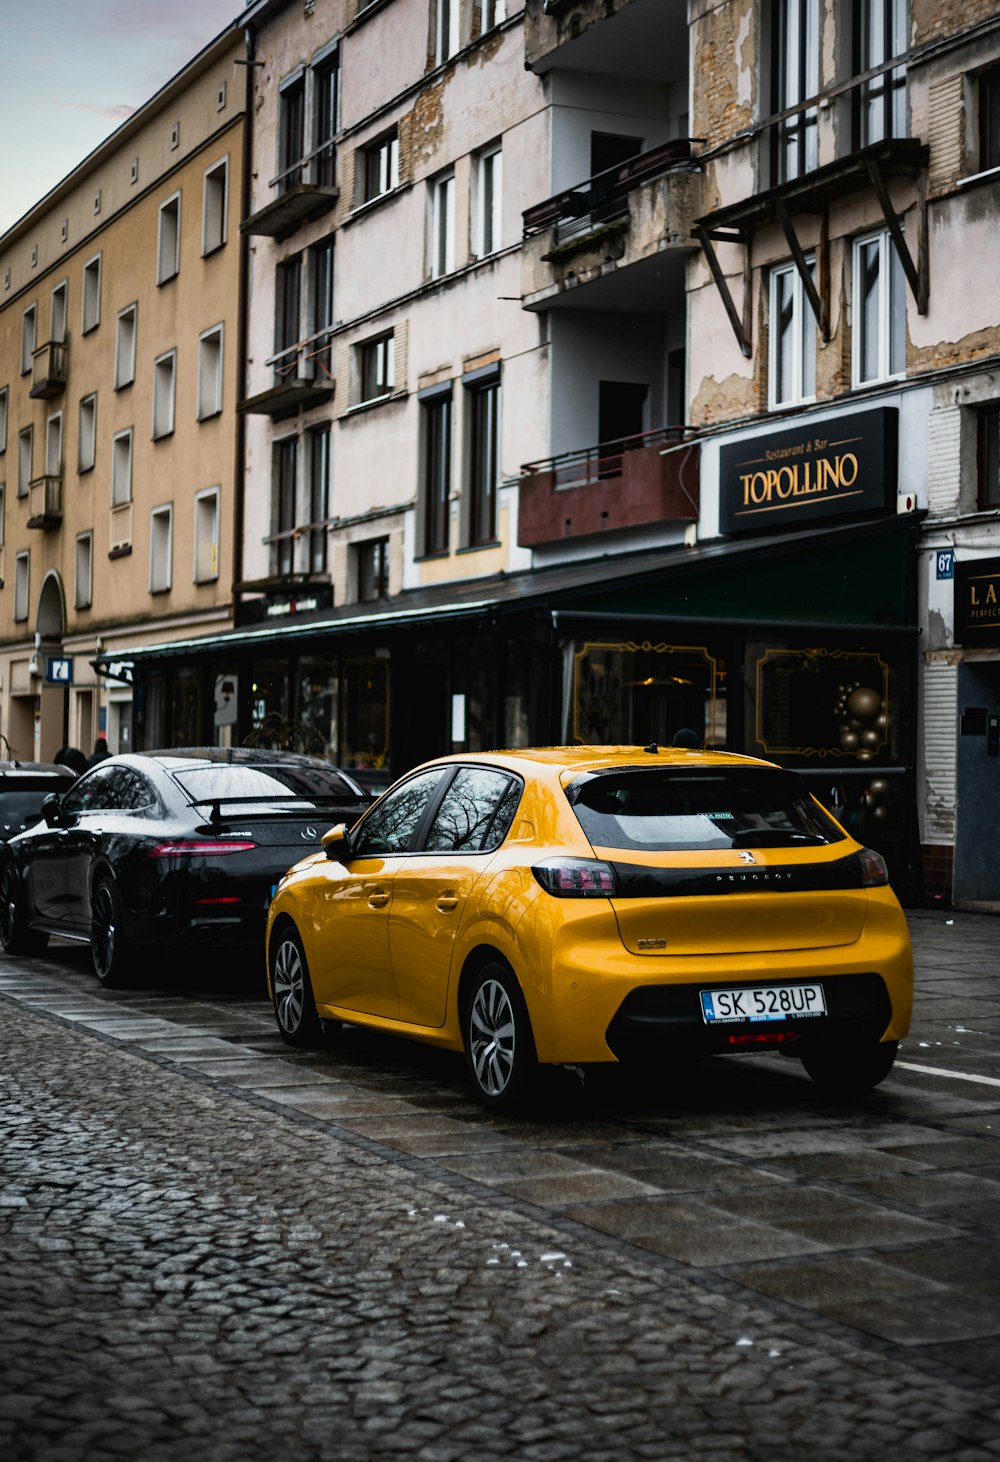 ein gelbes Auto, das am Straßenrand geparkt ist